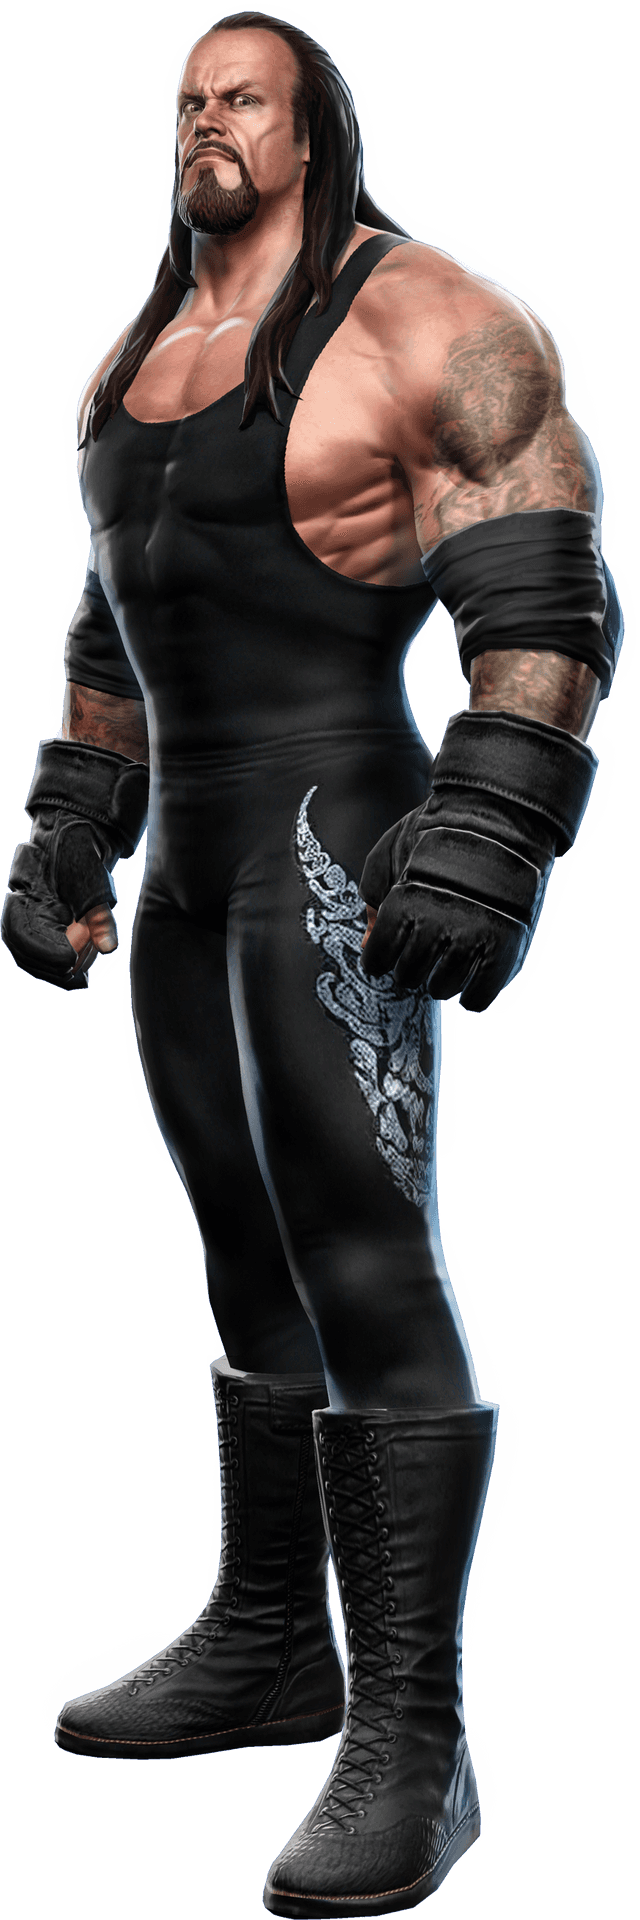 Undertaker Wrestling Legend Pose PNG image